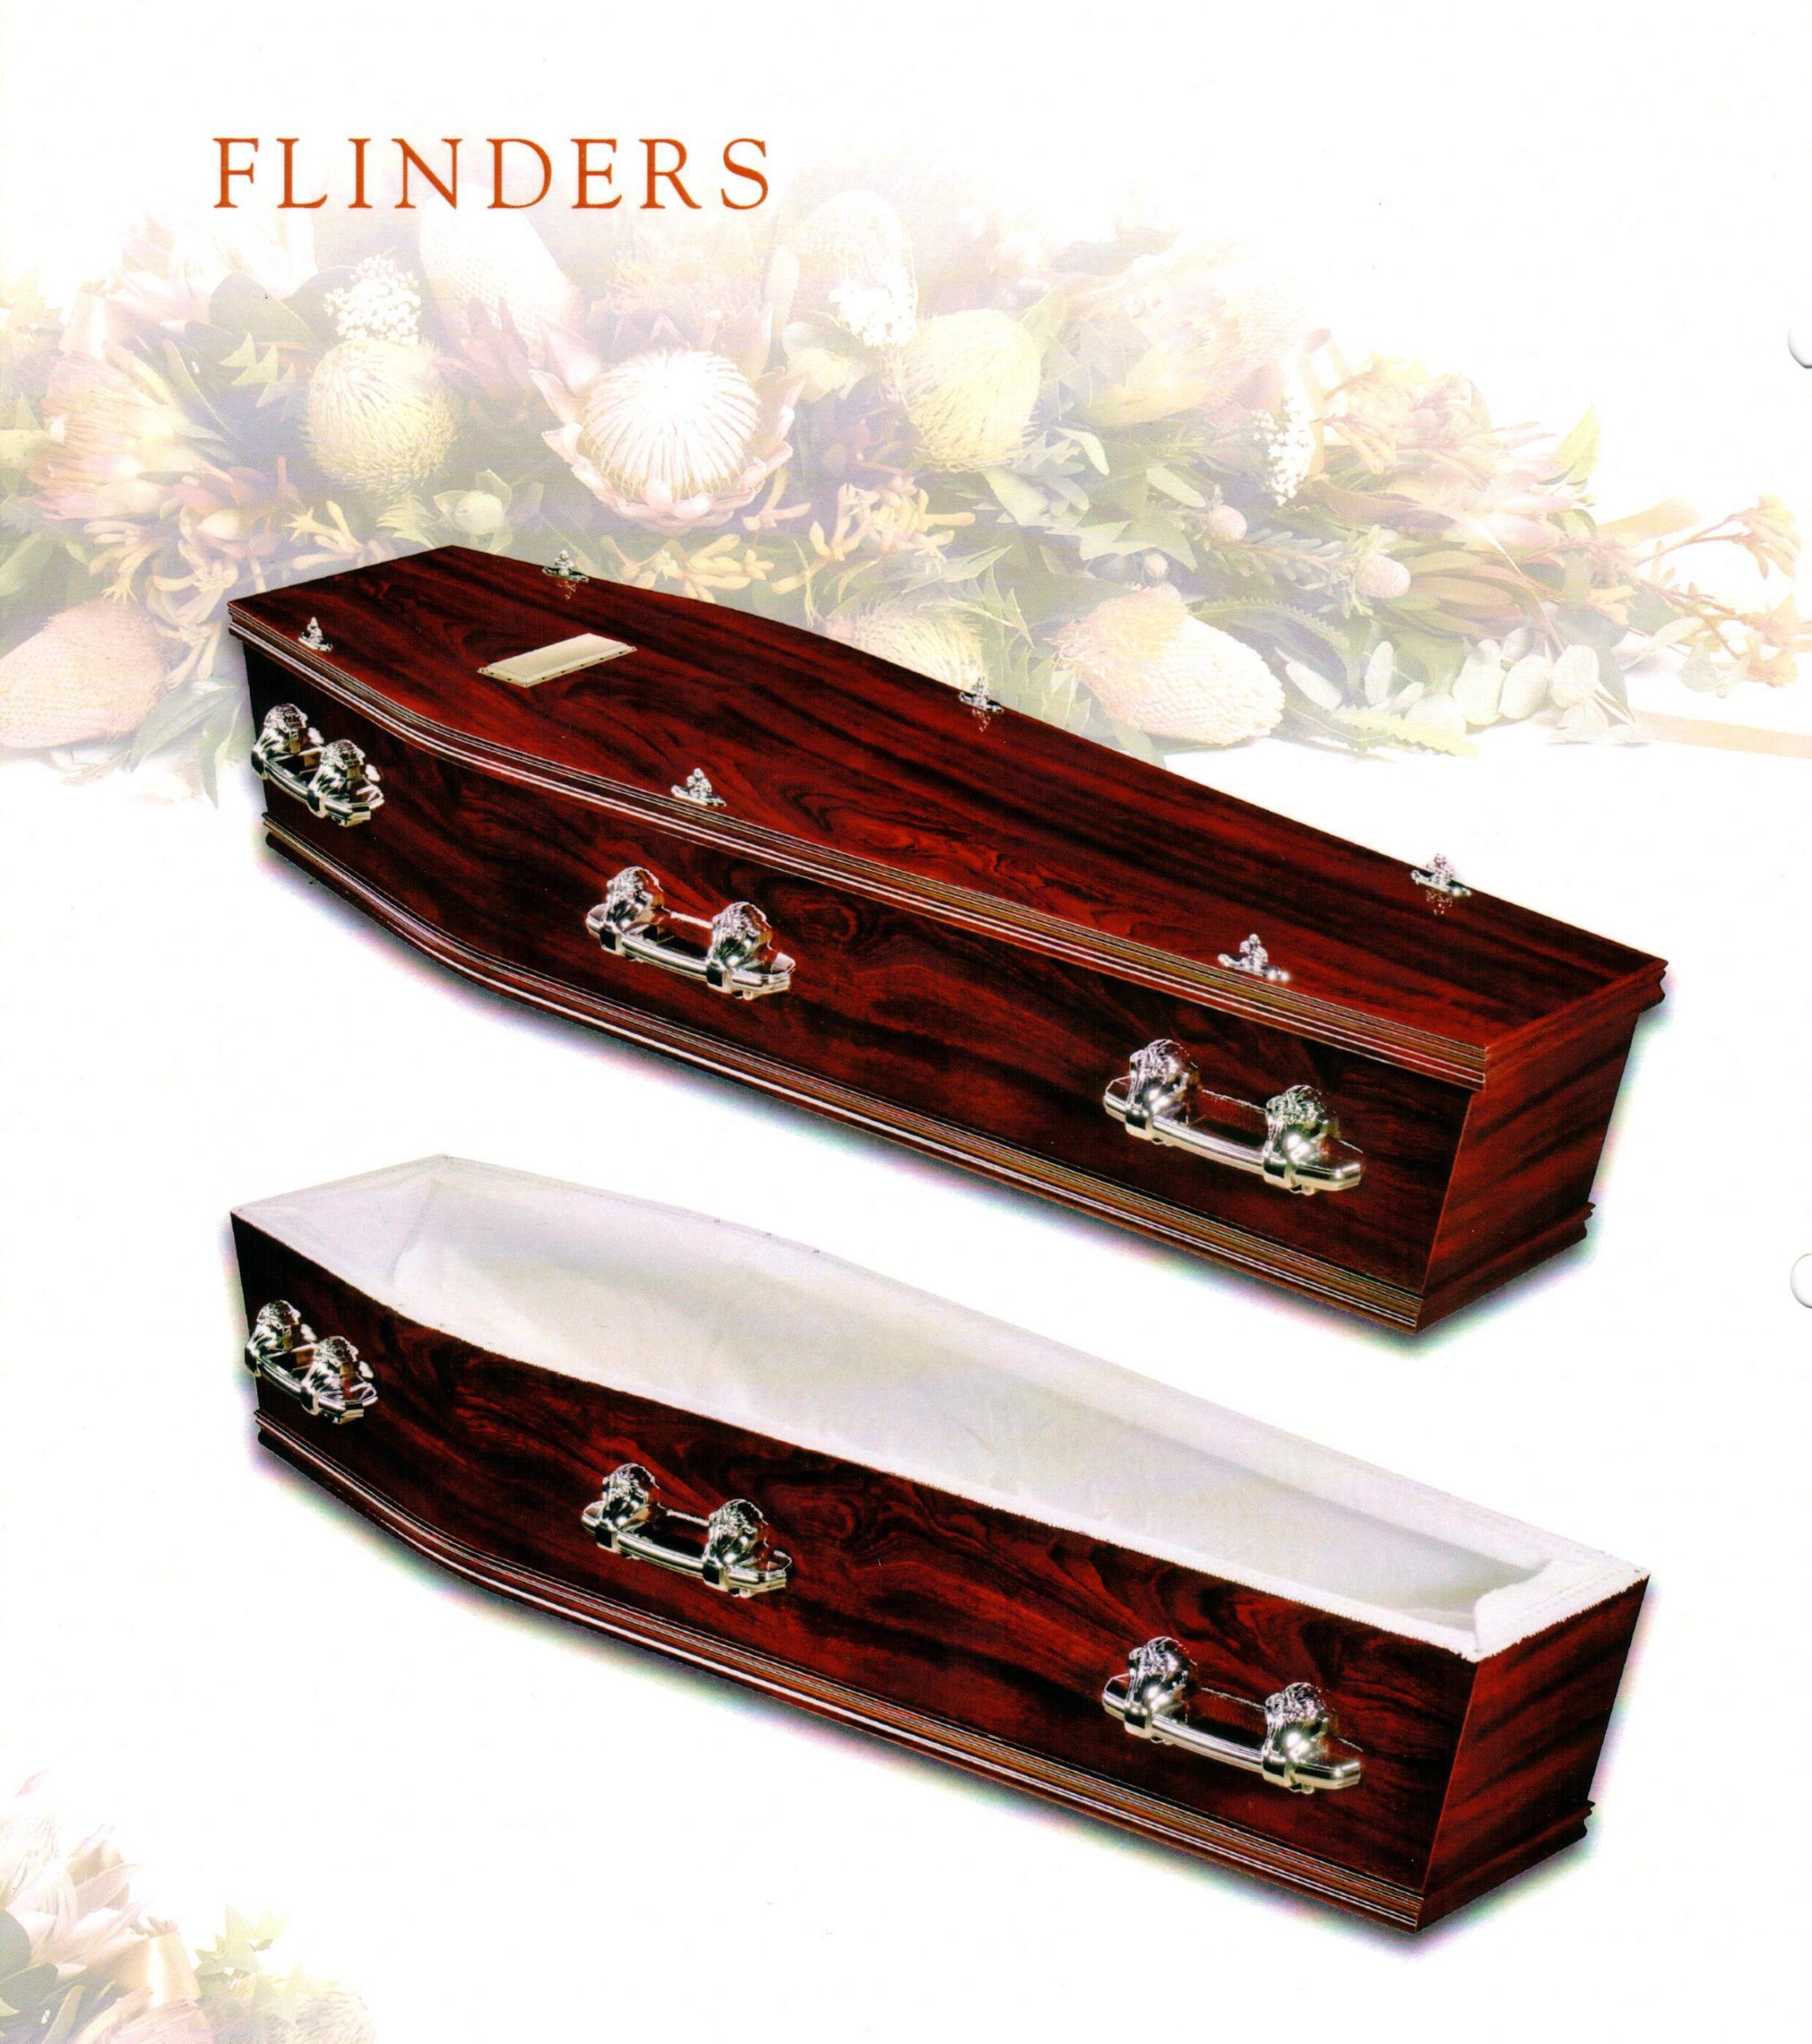 Flinders scale